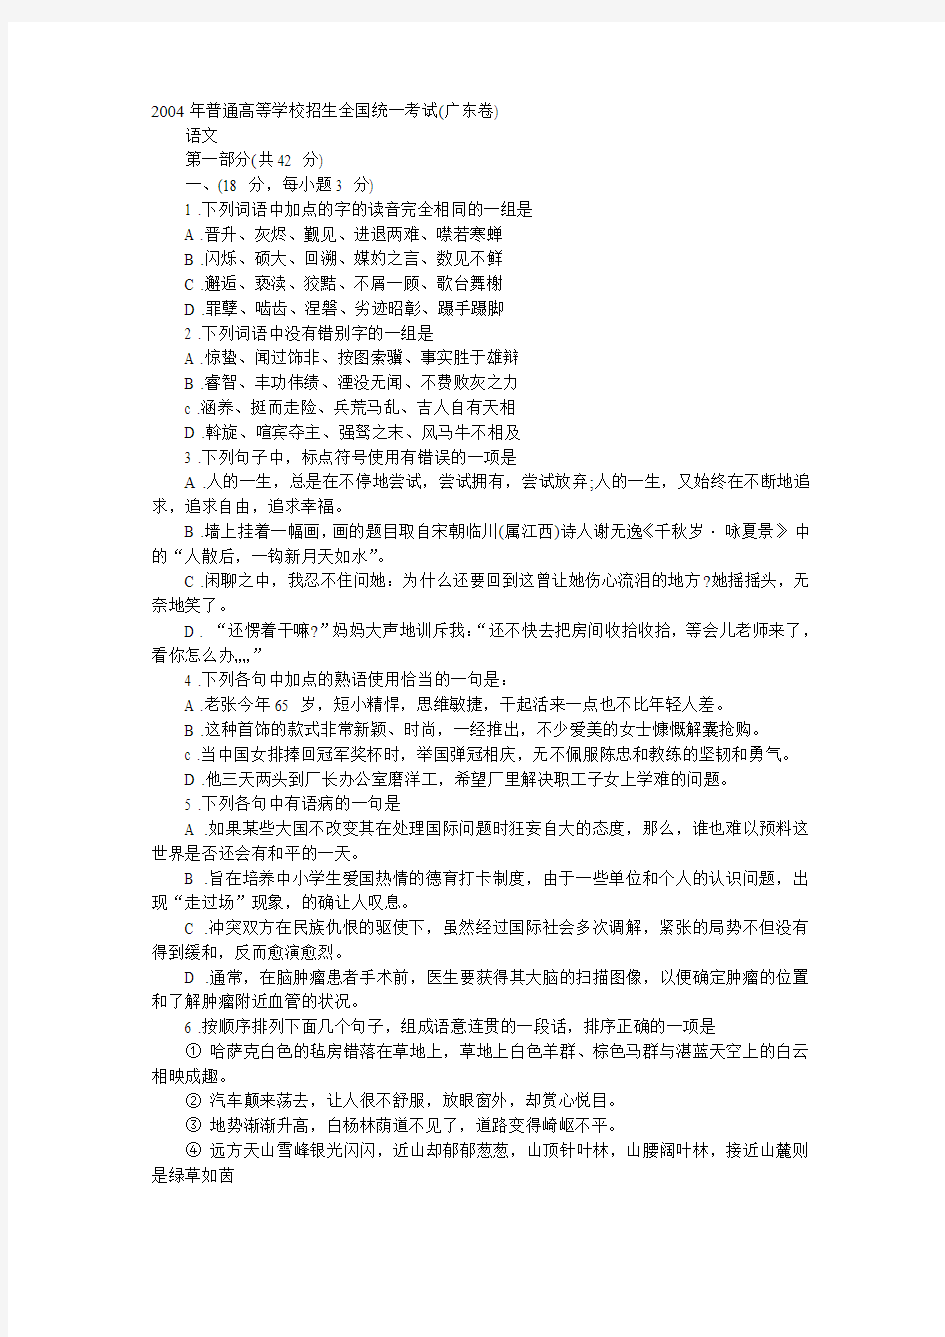 2004年高考语文试题及答案详解(广东福建卷)